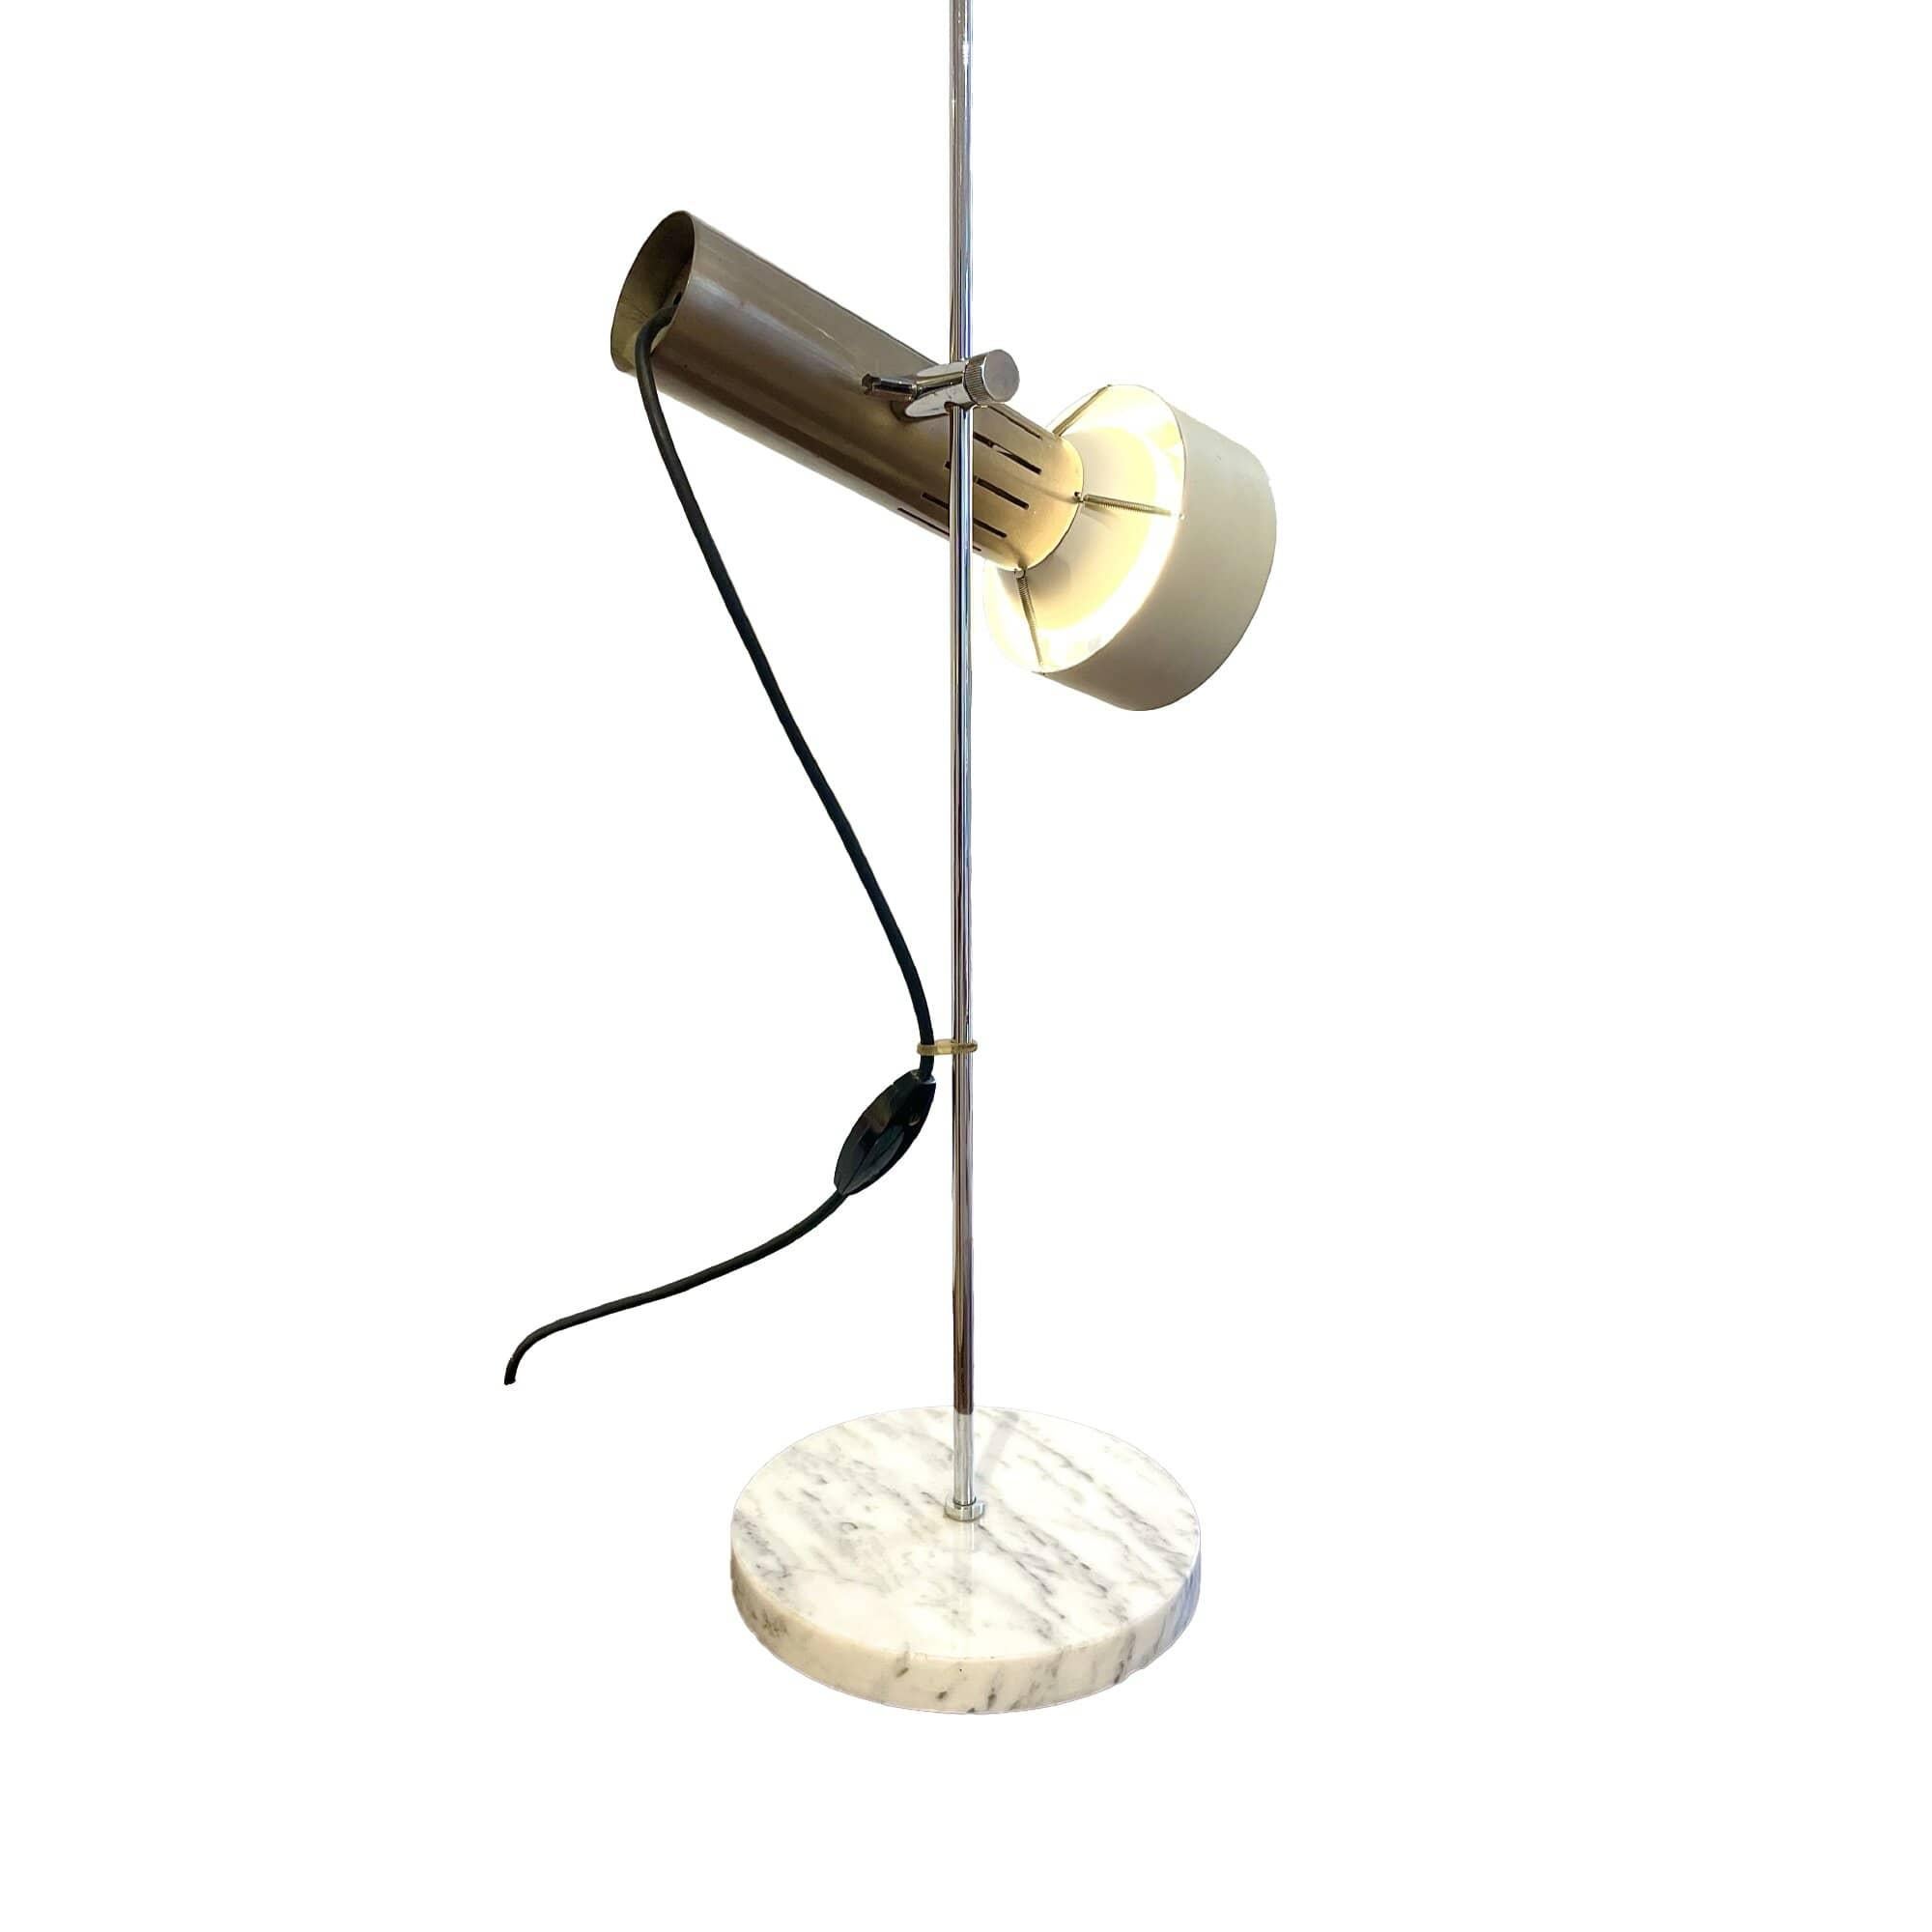 Lampe de table modèle A4 par Alain Richard pour Disderot. Ce design iconique d’Alain Richard en acier et marbre n’a été édité qu’entre 1958 et 1969. Cette lampe à la forme épurée peut être dotée d’un paralume, un élément inventé par Alain Richard